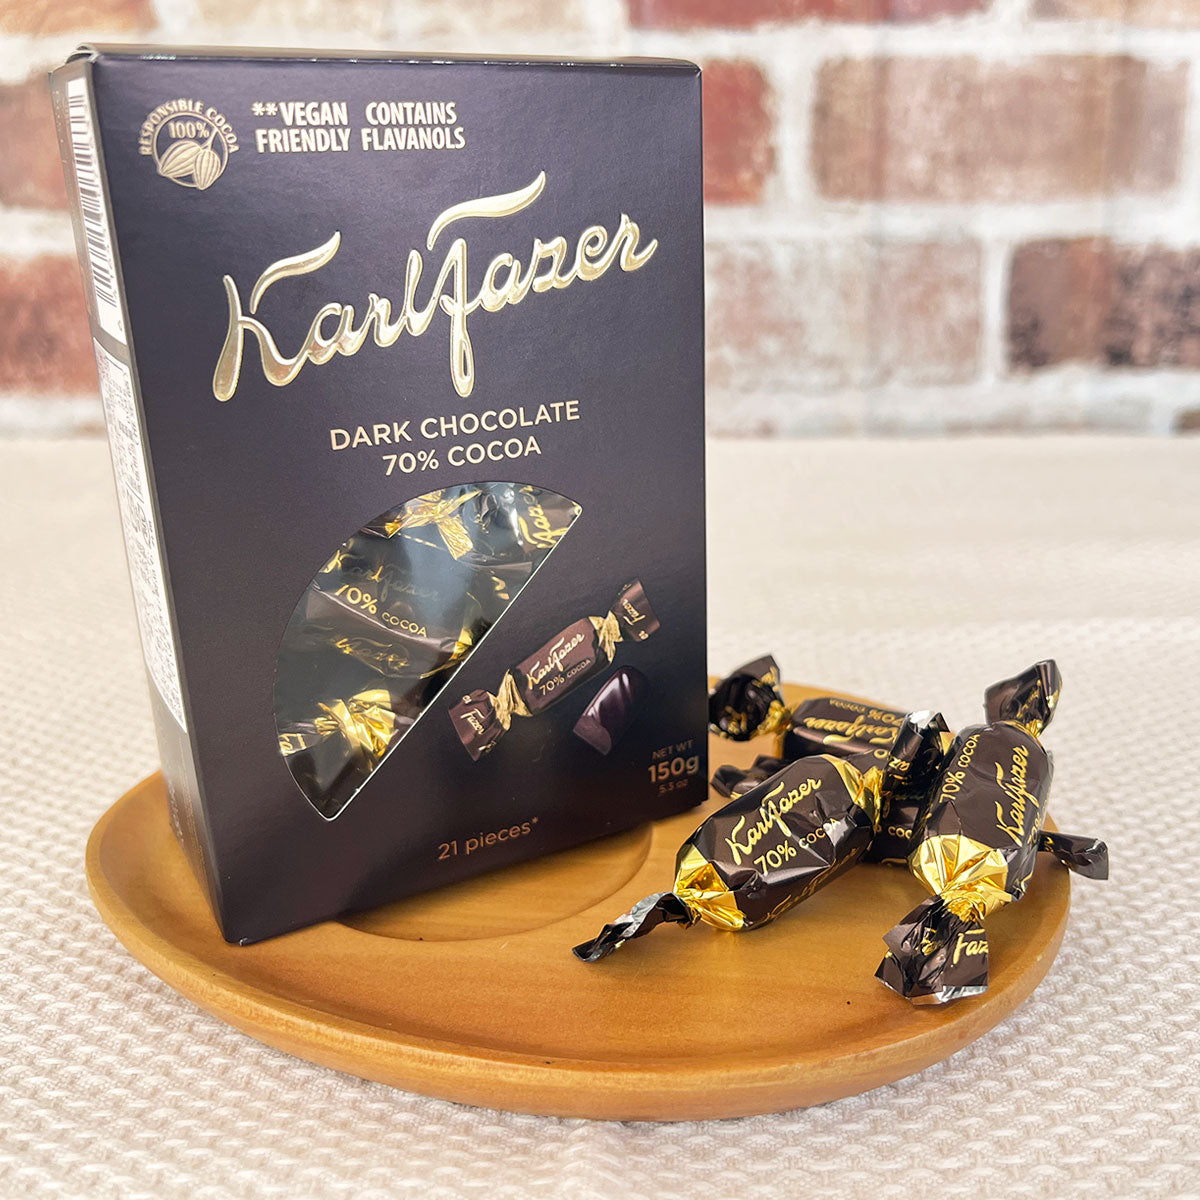 Fazer ファッツェル KarlFazer ダーク70％チョコレート ( 箱入り / 150g )